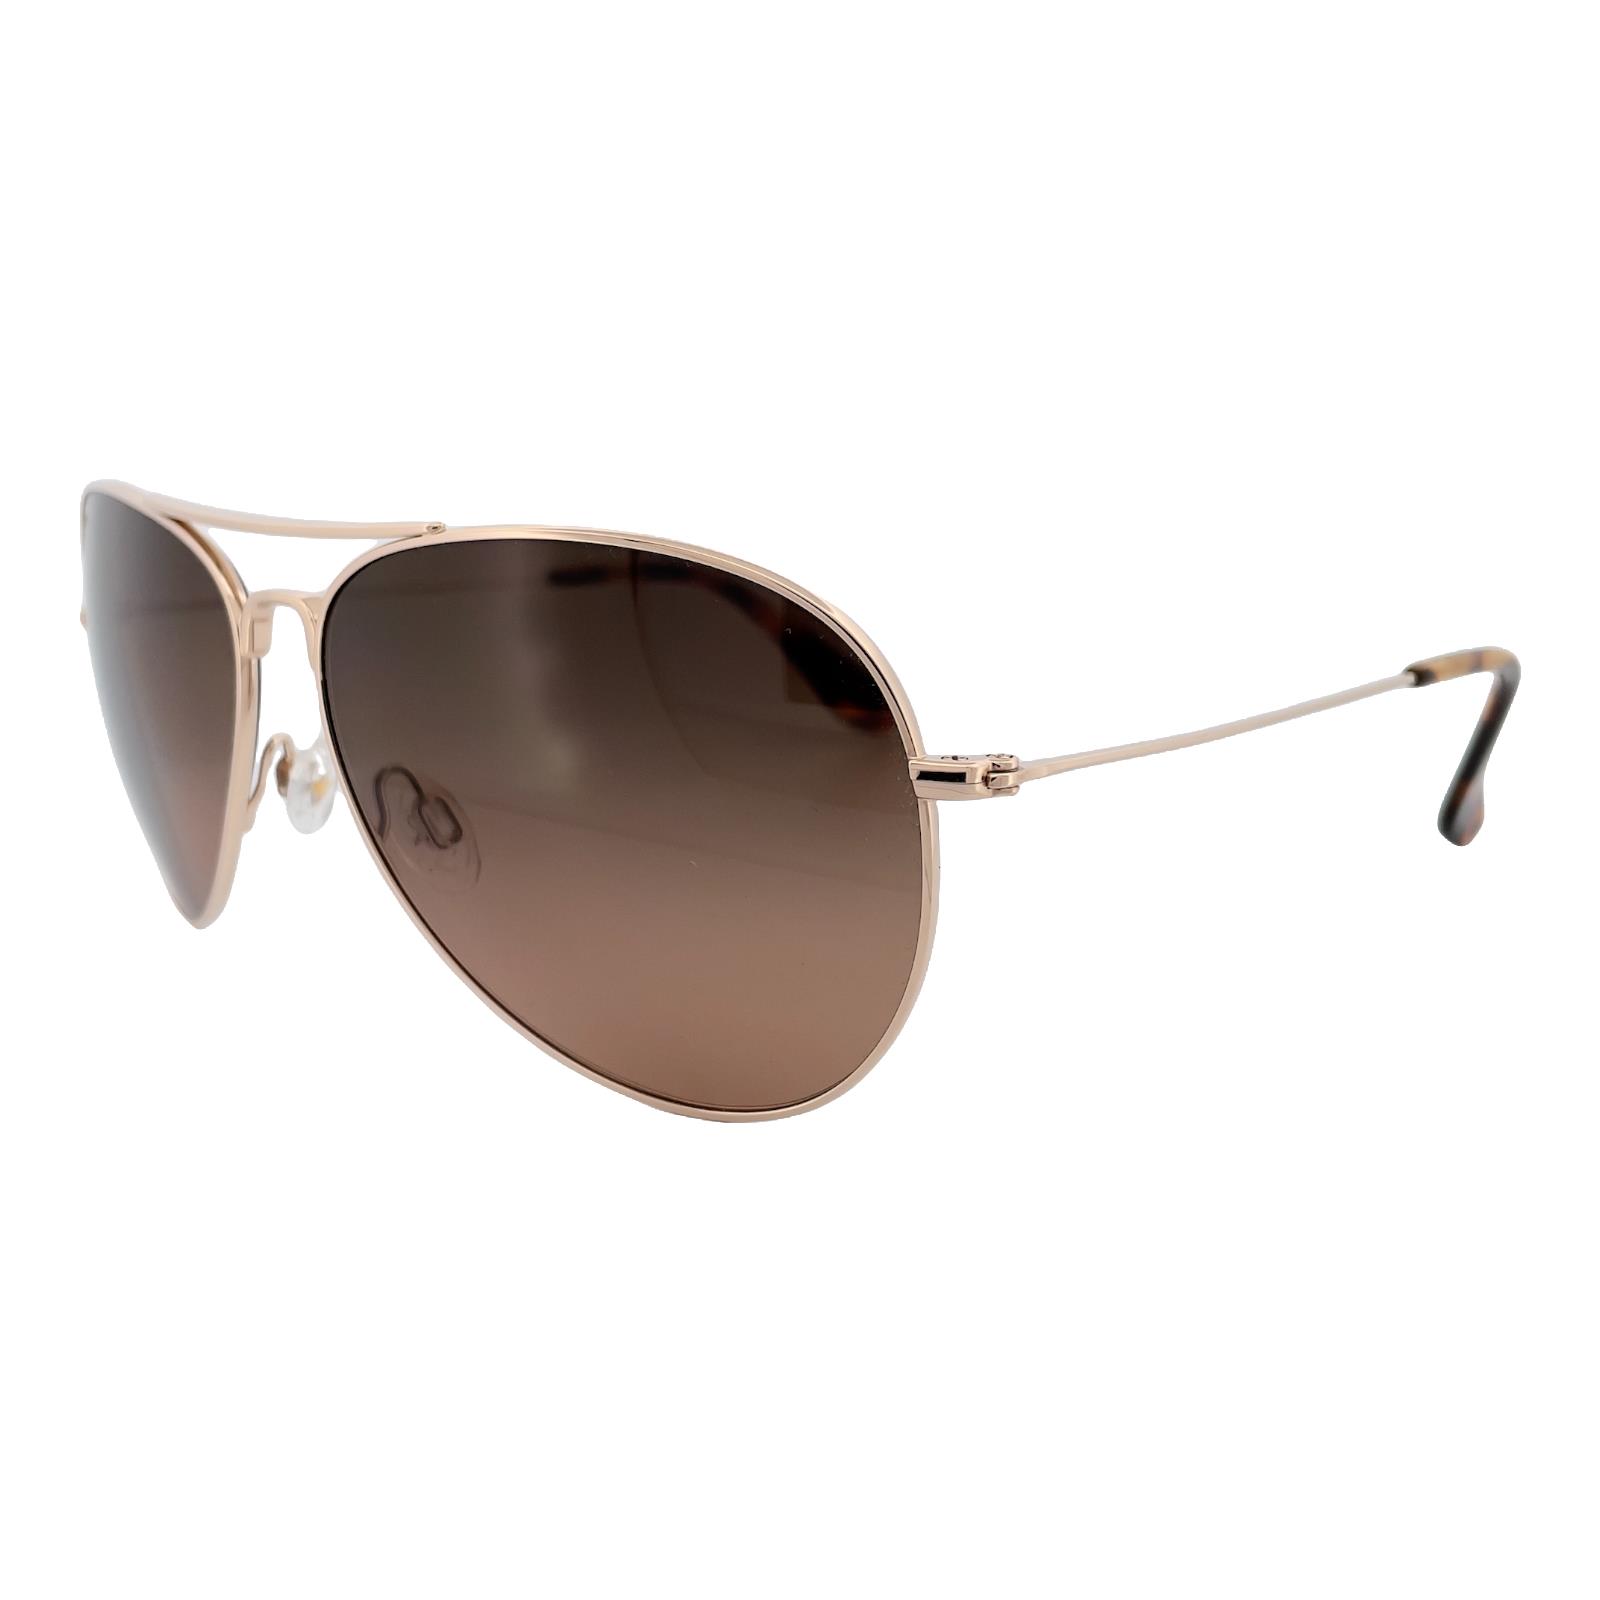 Maui Jim Men Sunglasses Mavericks HS264-16 Titanium Gold Bronze Polarized Lens